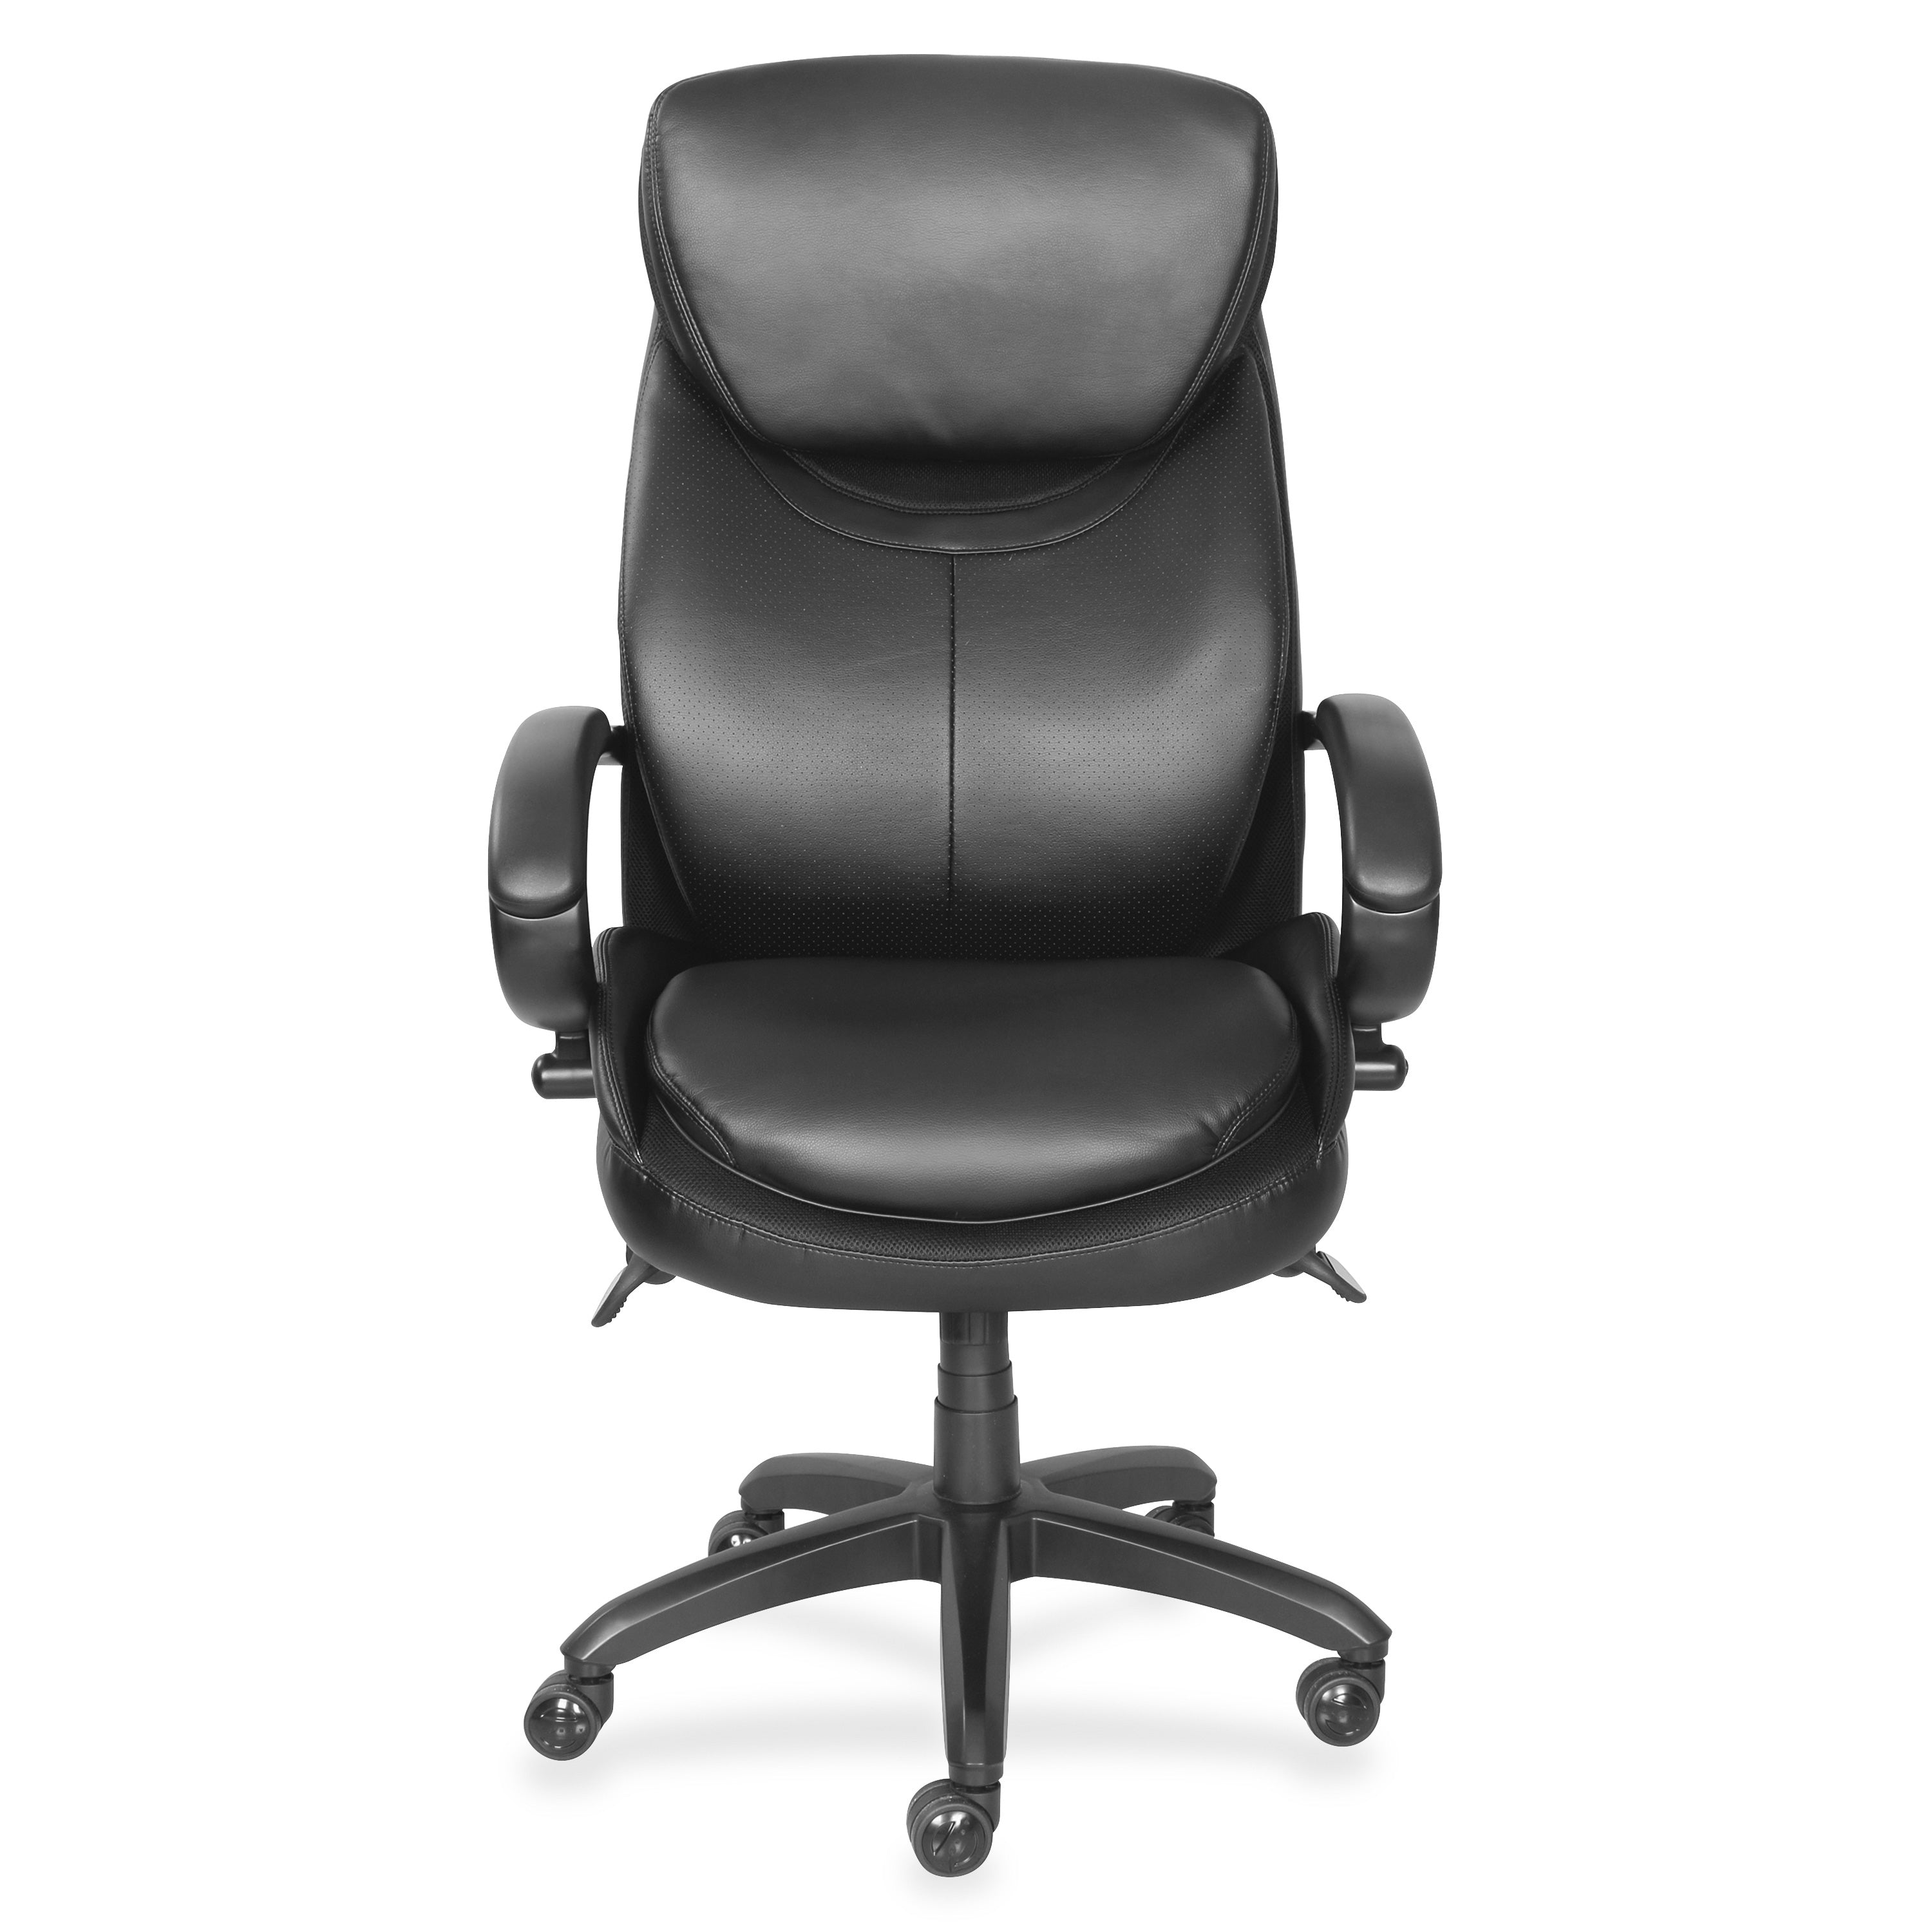 la-z-boy-chair-black-faux-leather-seat-black-faux-leather-back-high-back-black-armrest-1-each_lzb48081 - 2